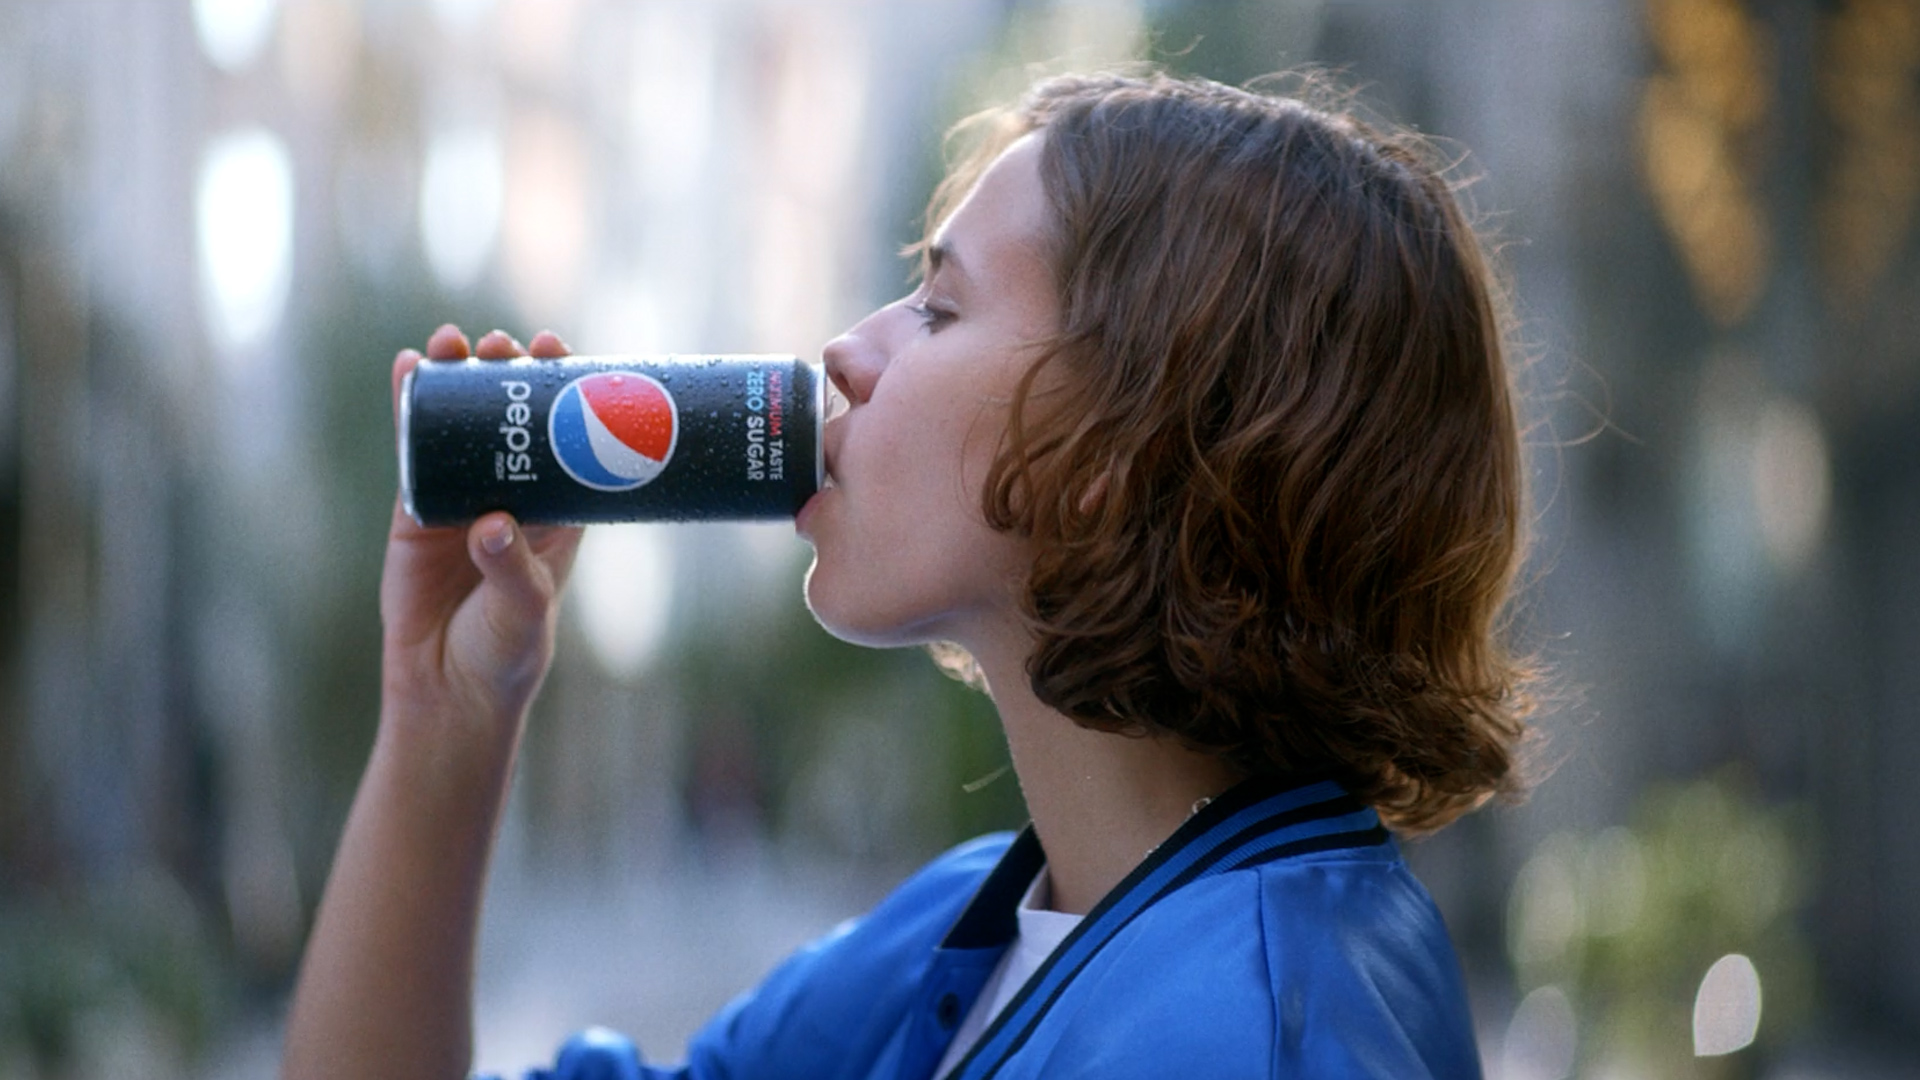 Pepsi Max Maximum Taste